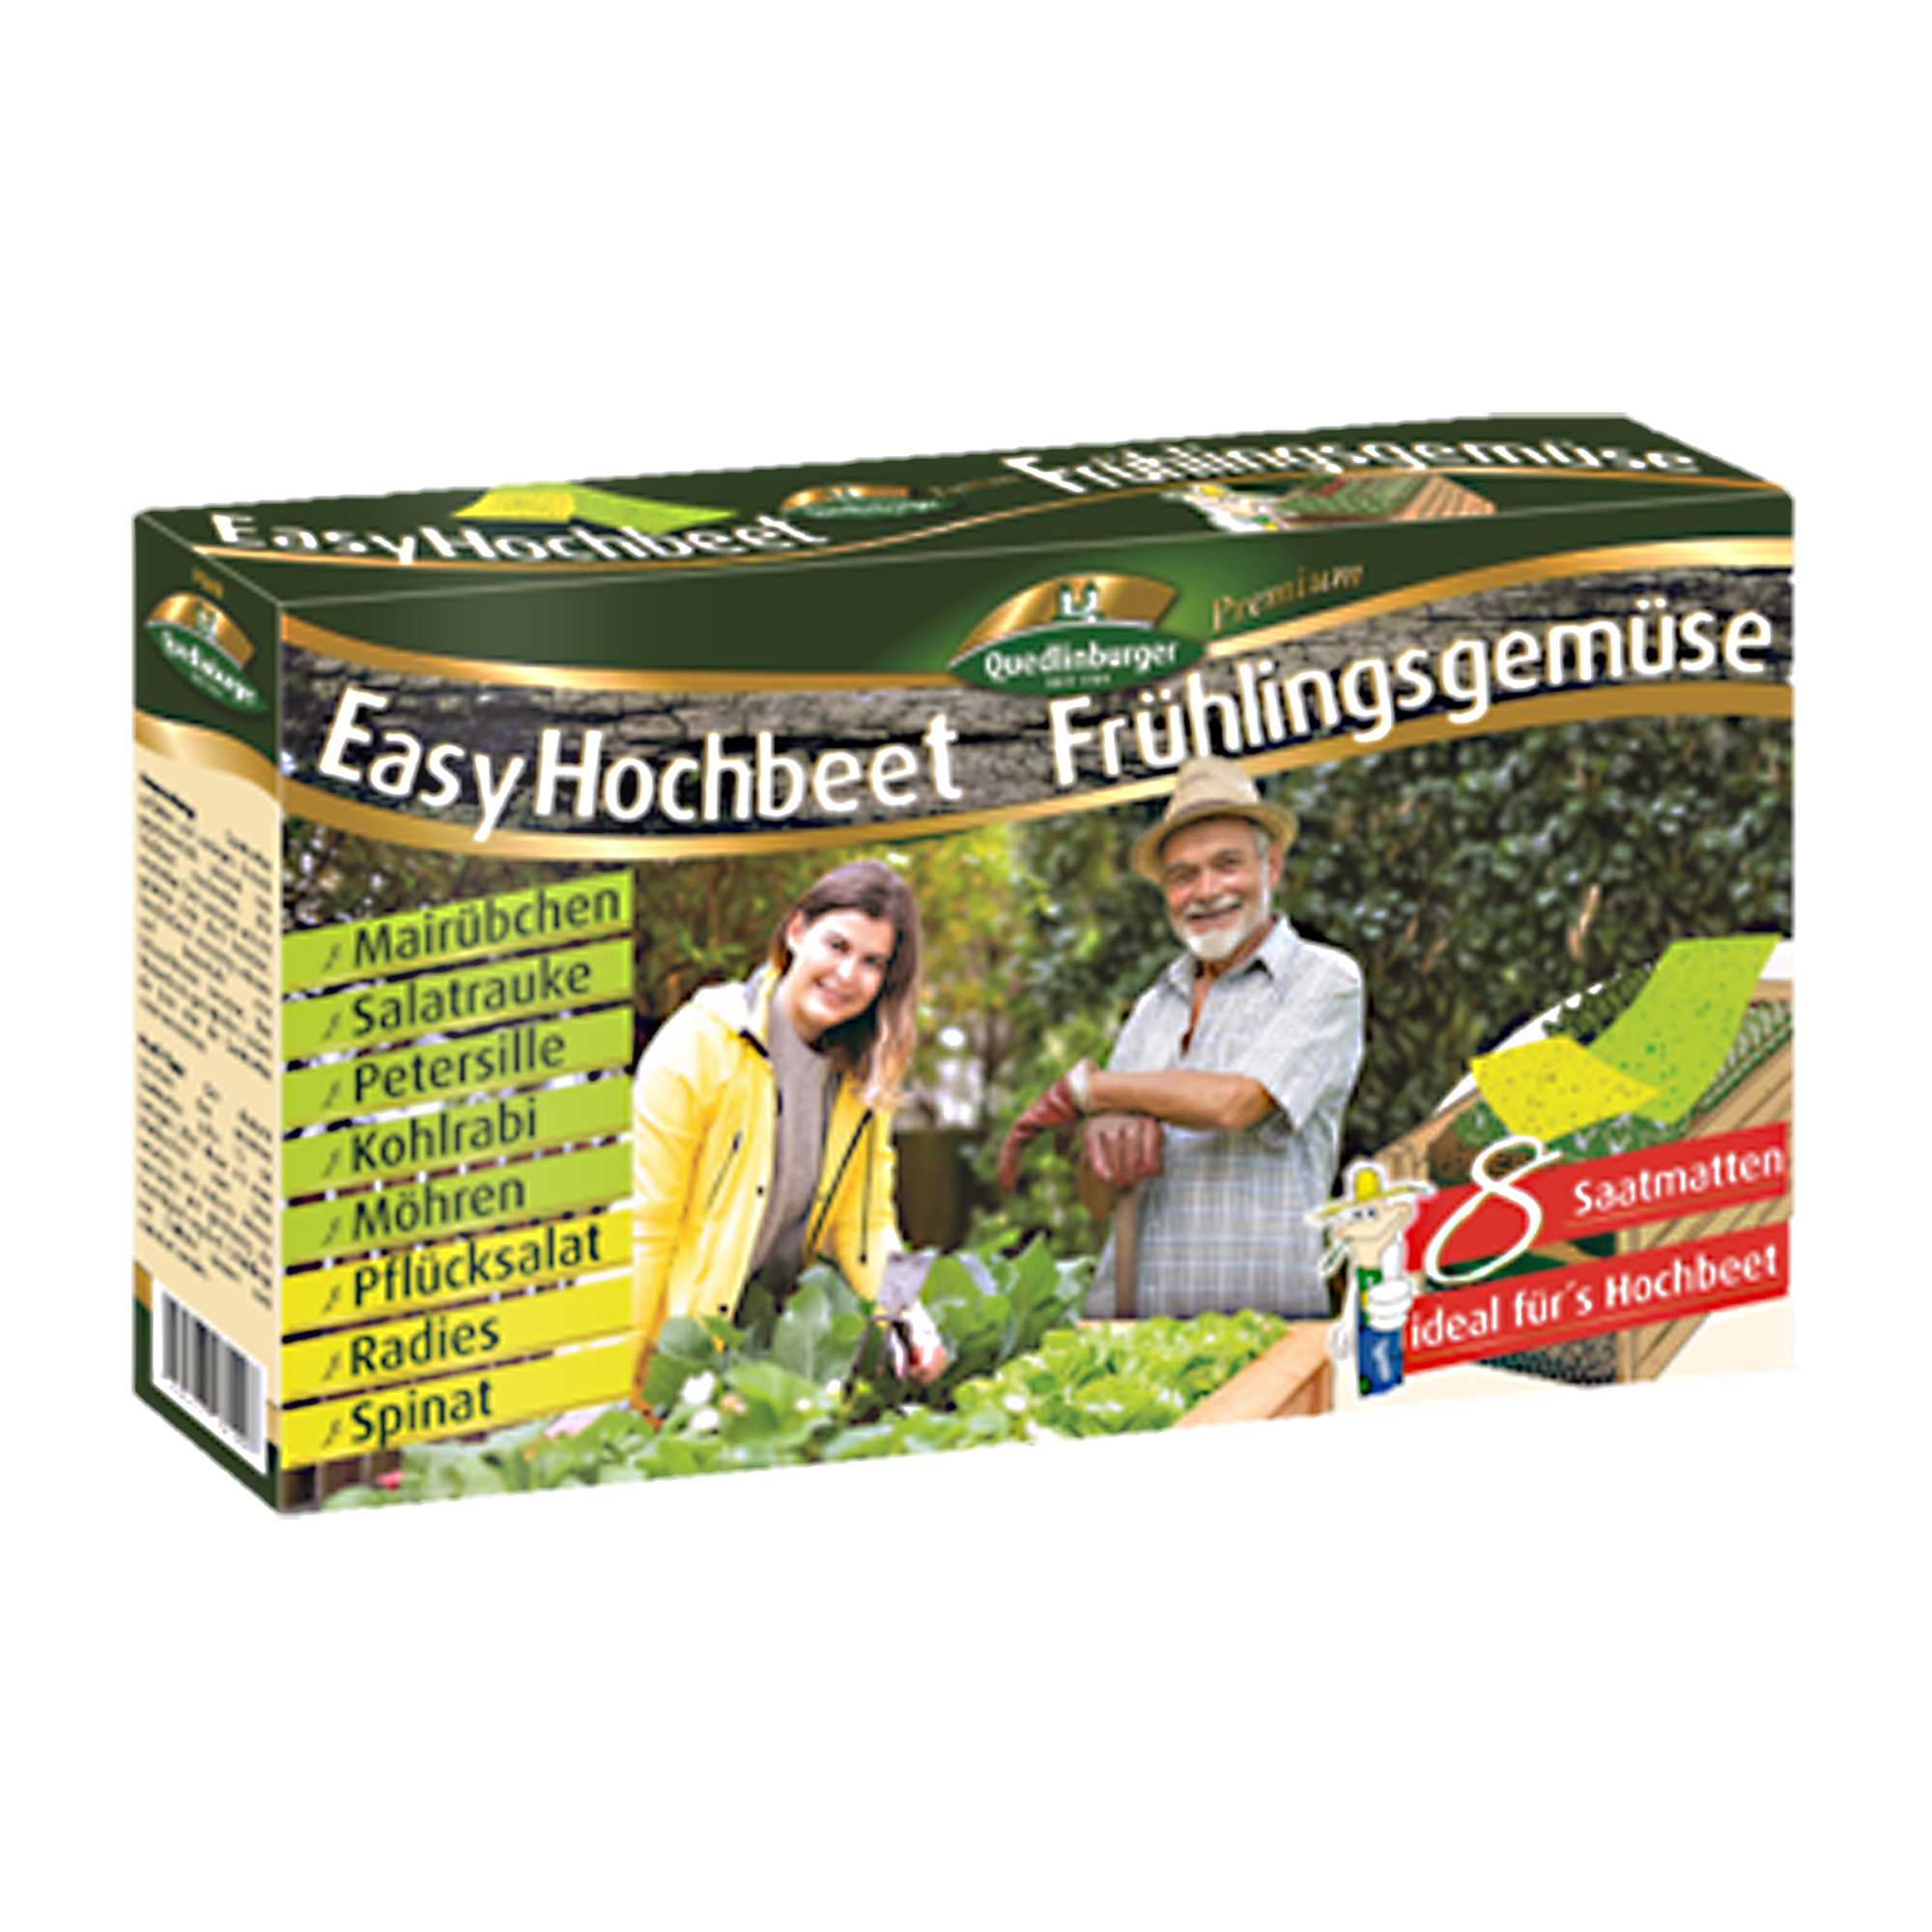 Hochbeet 'Easy Hochbeet - Frühlingsgemüse' Saatmatten Mischung + product picture